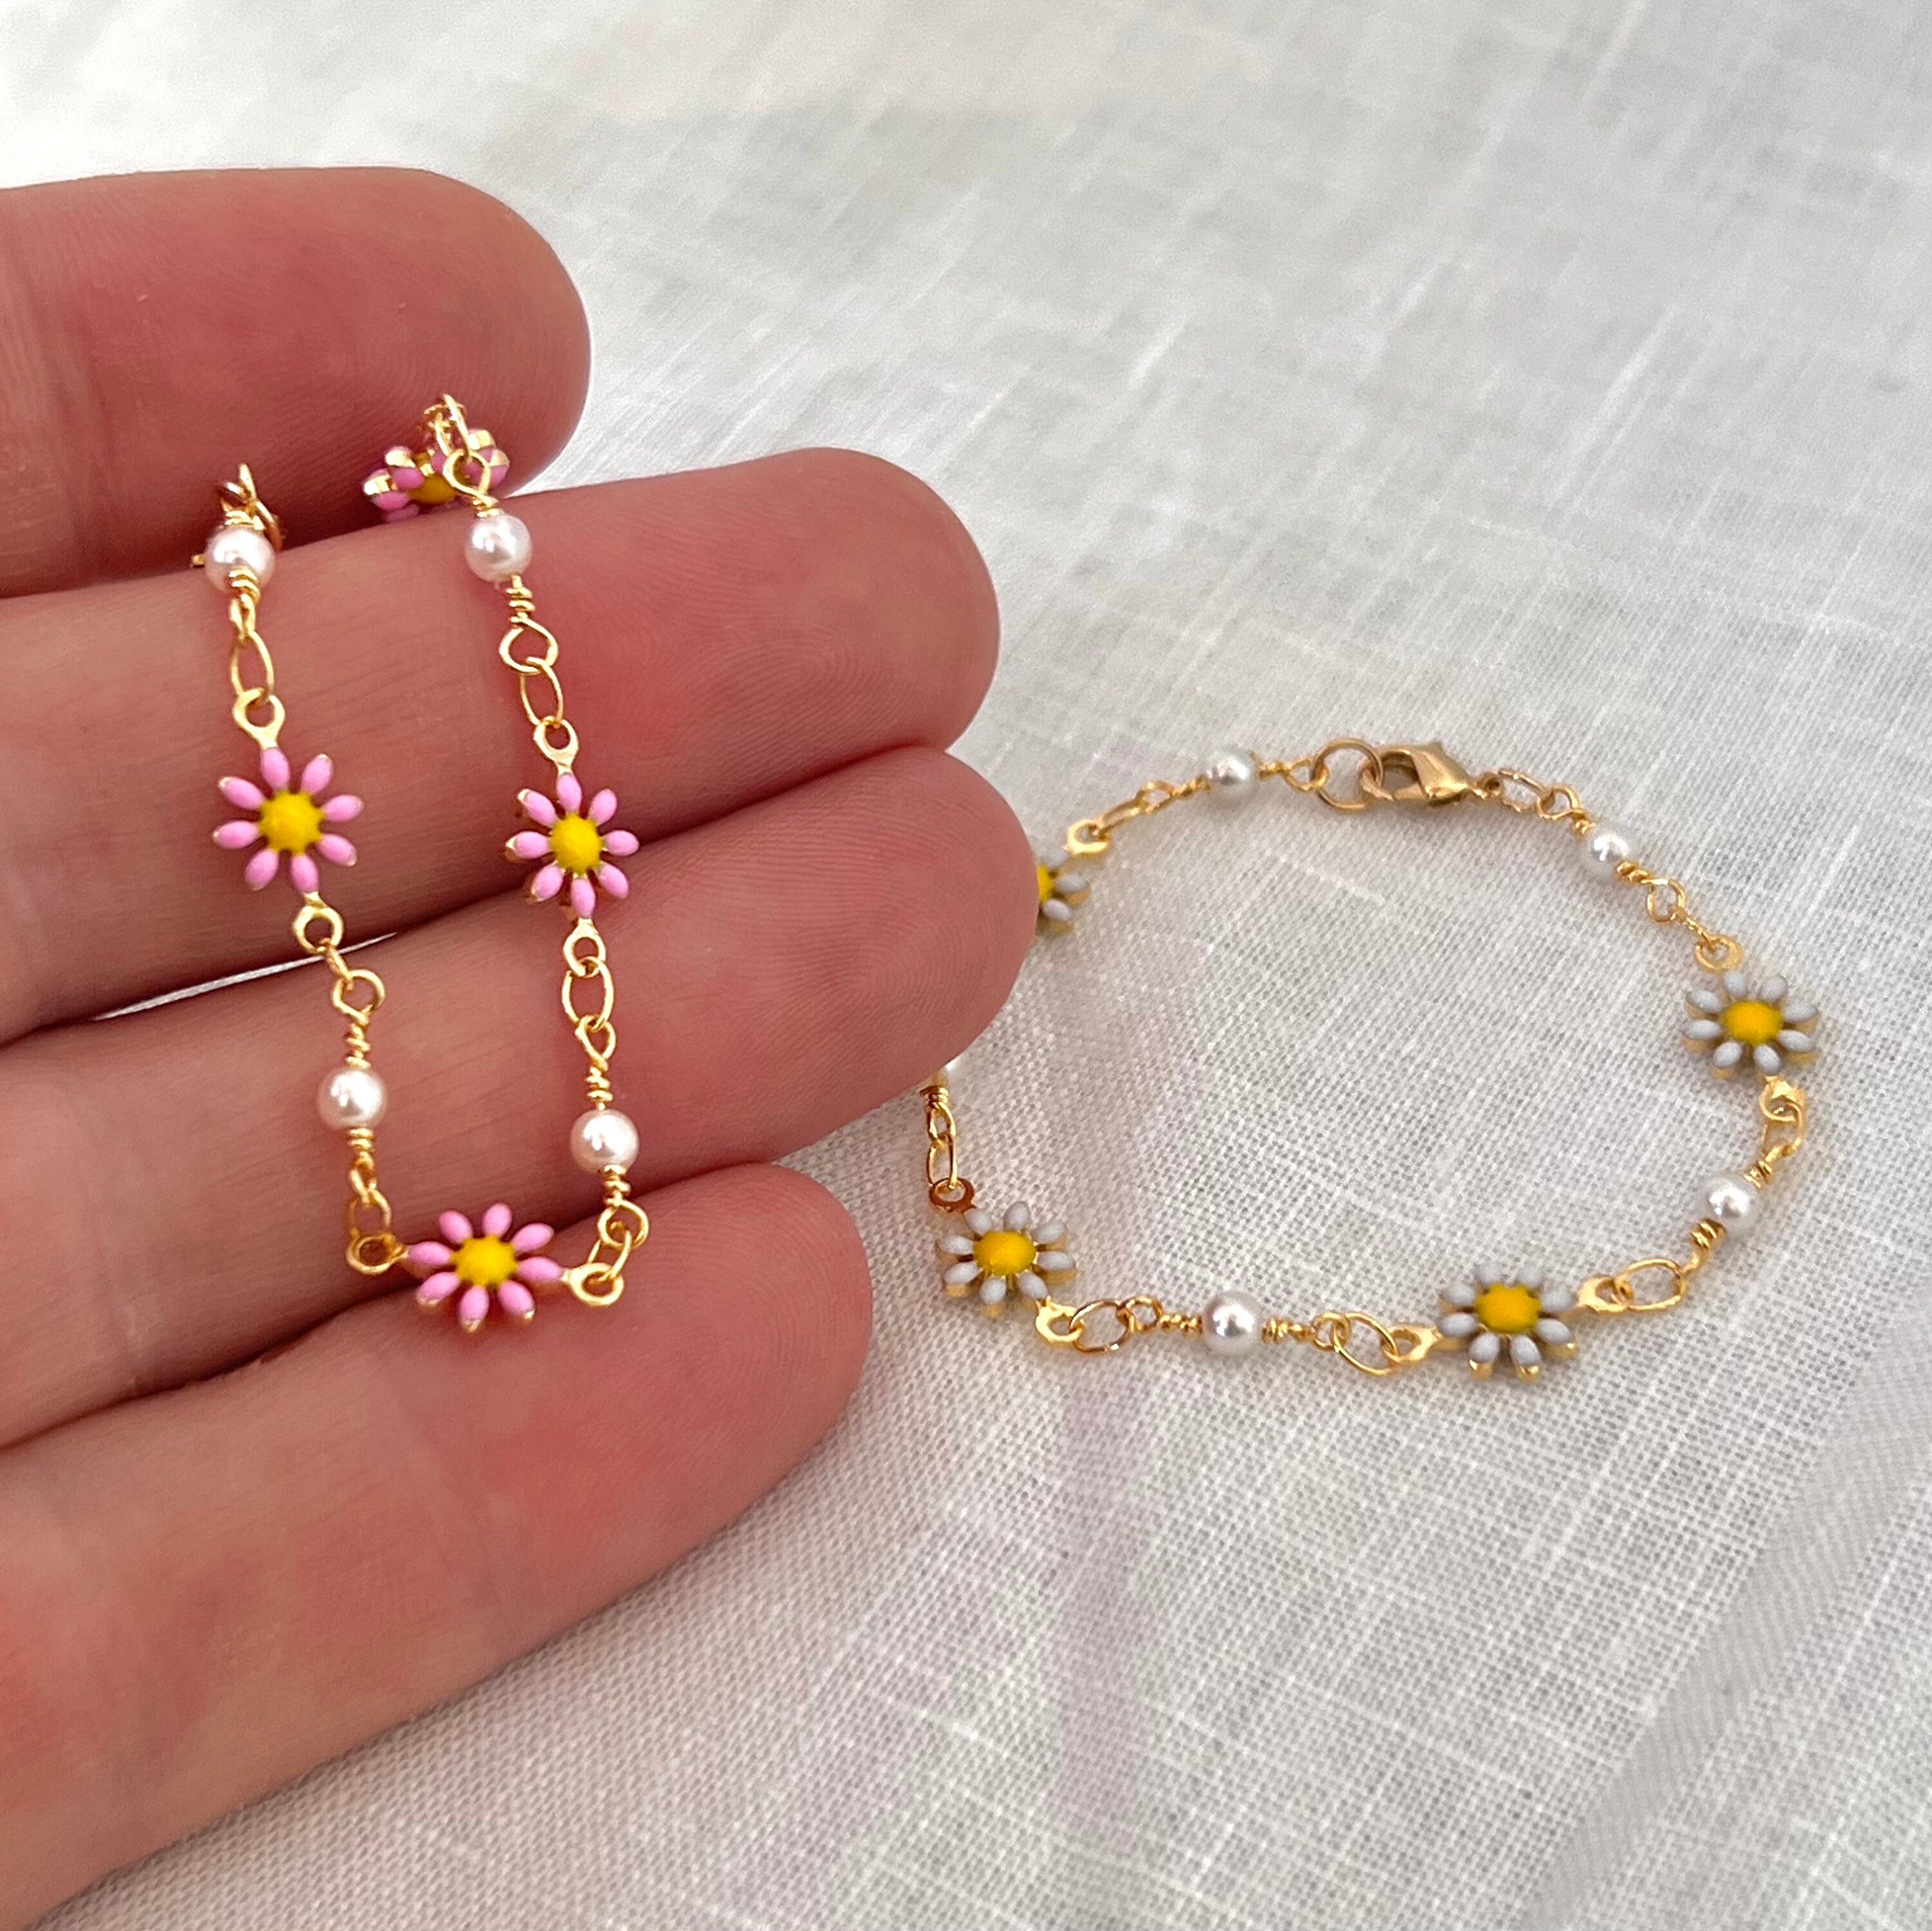 Gold Flower Bracelet for Girls, Children's Pink White Daisy Bracelet, Baby Bracelet, Birthday Gift, Anklet for Kids, Cute Flower Chain